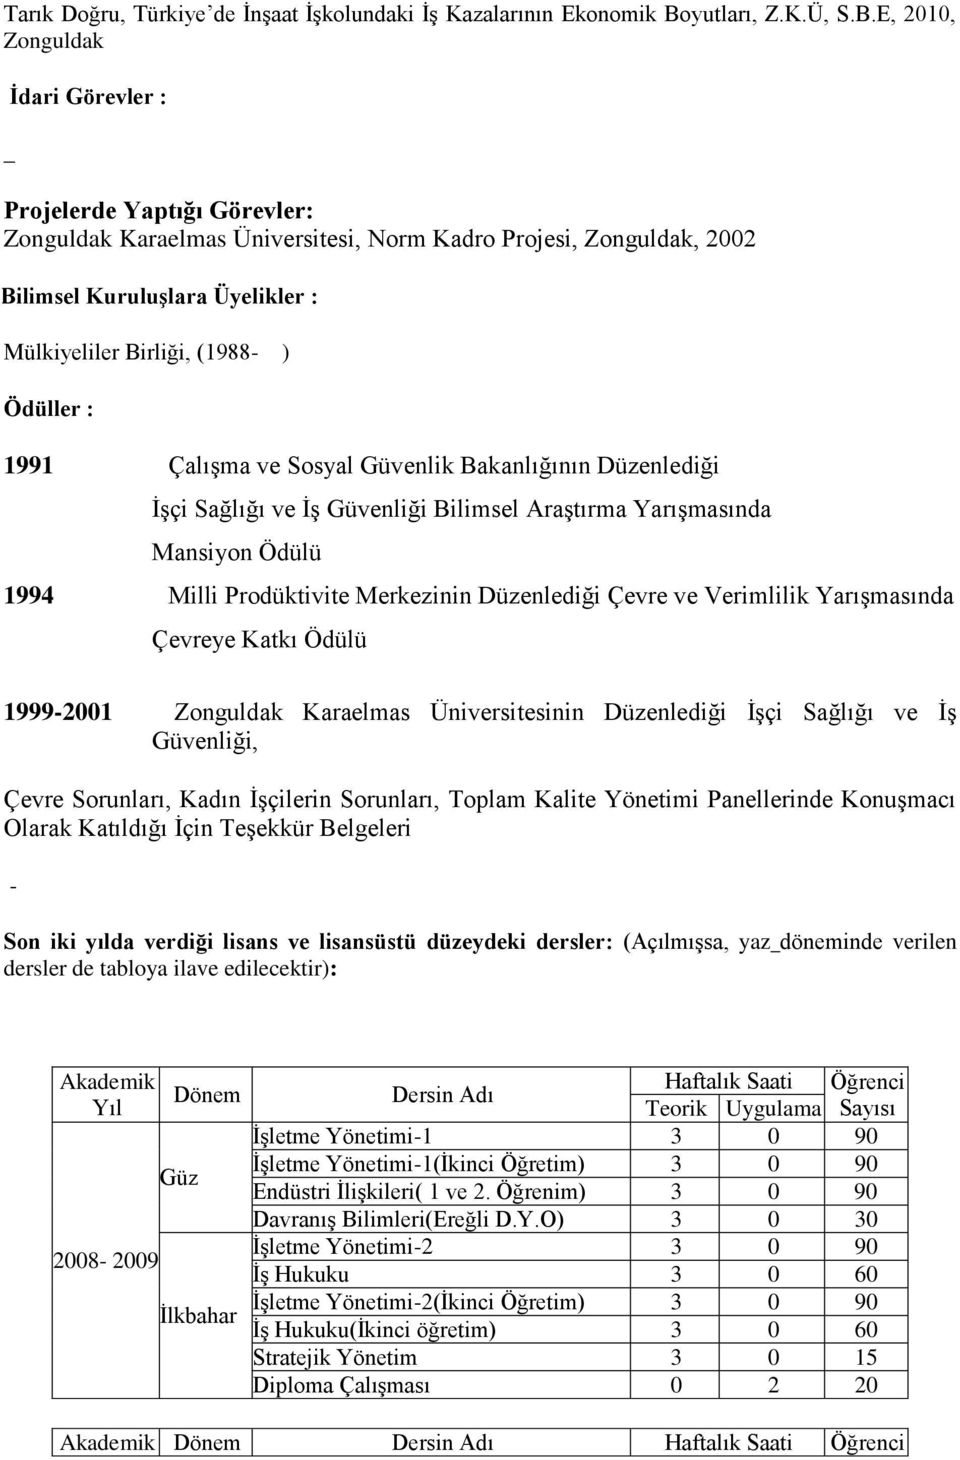 E, 2010, Zonguldak _ İdari Görevler : Projelerde Yaptığı Görevler: Zonguldak Karaelmas Üniversitesi, Norm Kadro Projesi, Zonguldak, 2002 Bilimsel Kuruluşlara Üyelikler : Mülkiyeliler Birliği, (1988-